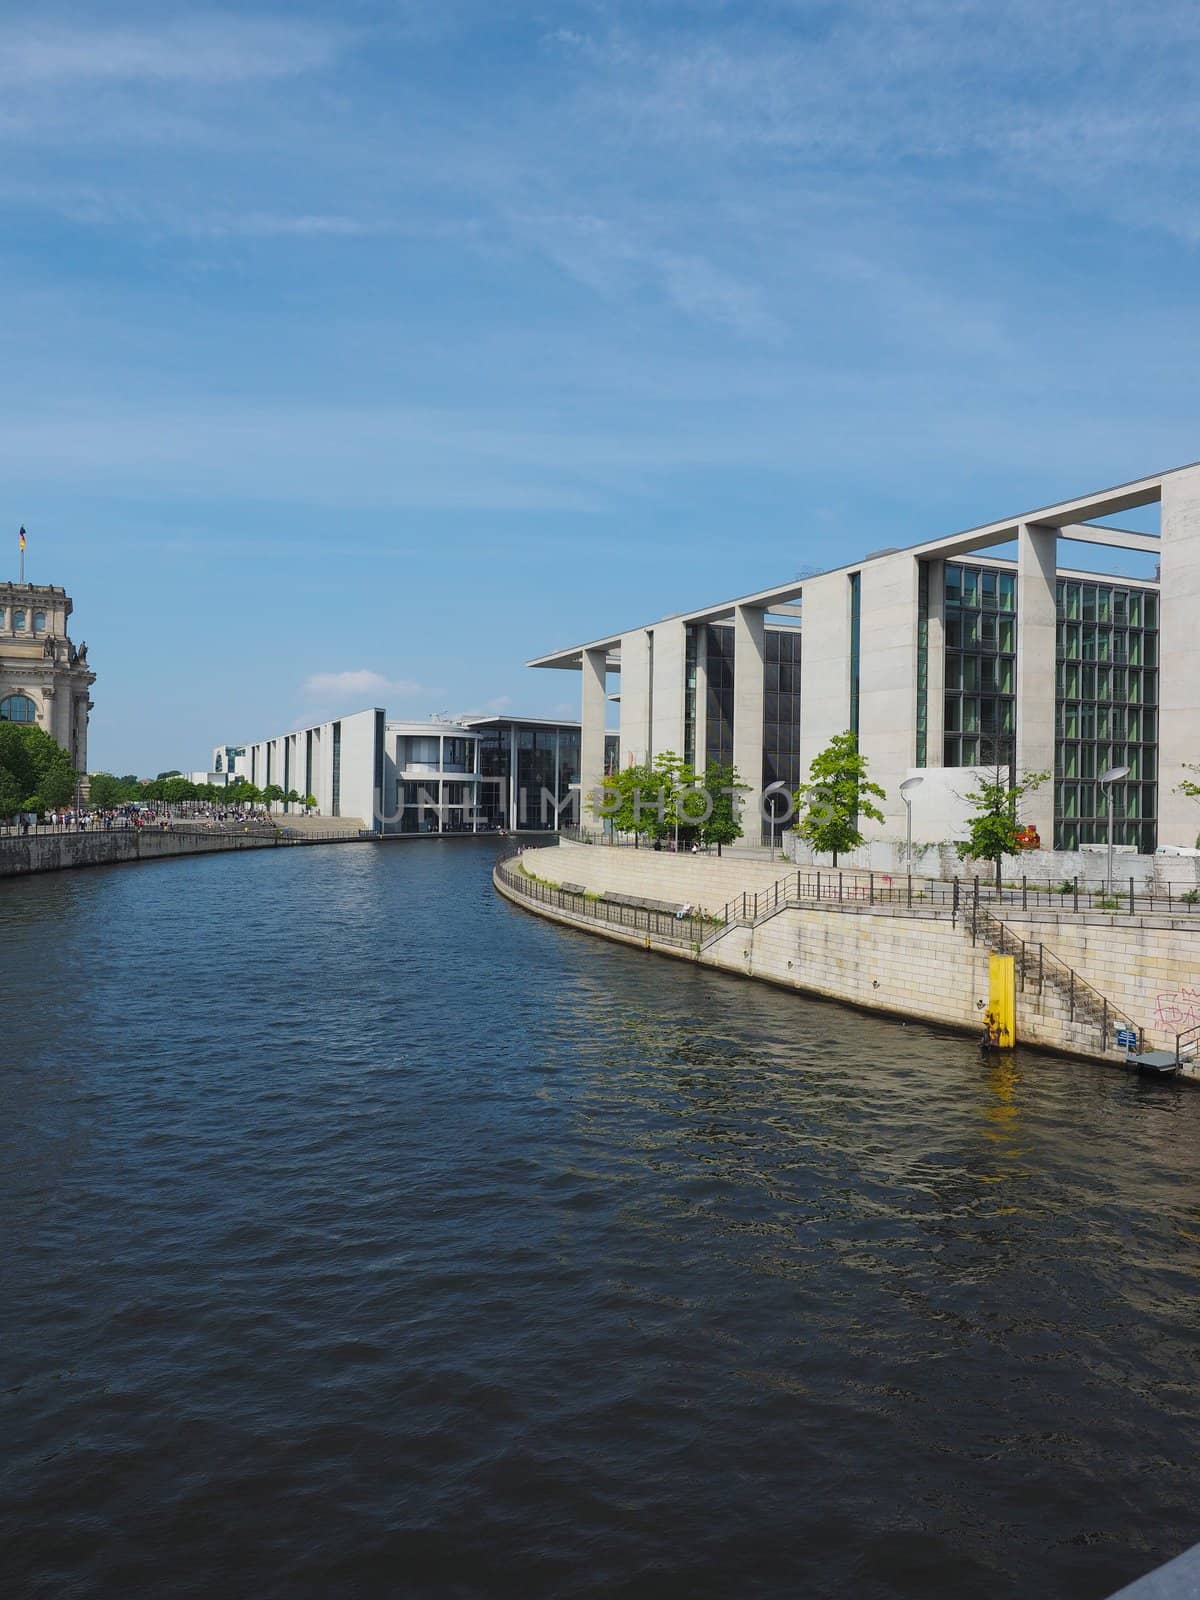 River Spree in Berlin by claudiodivizia